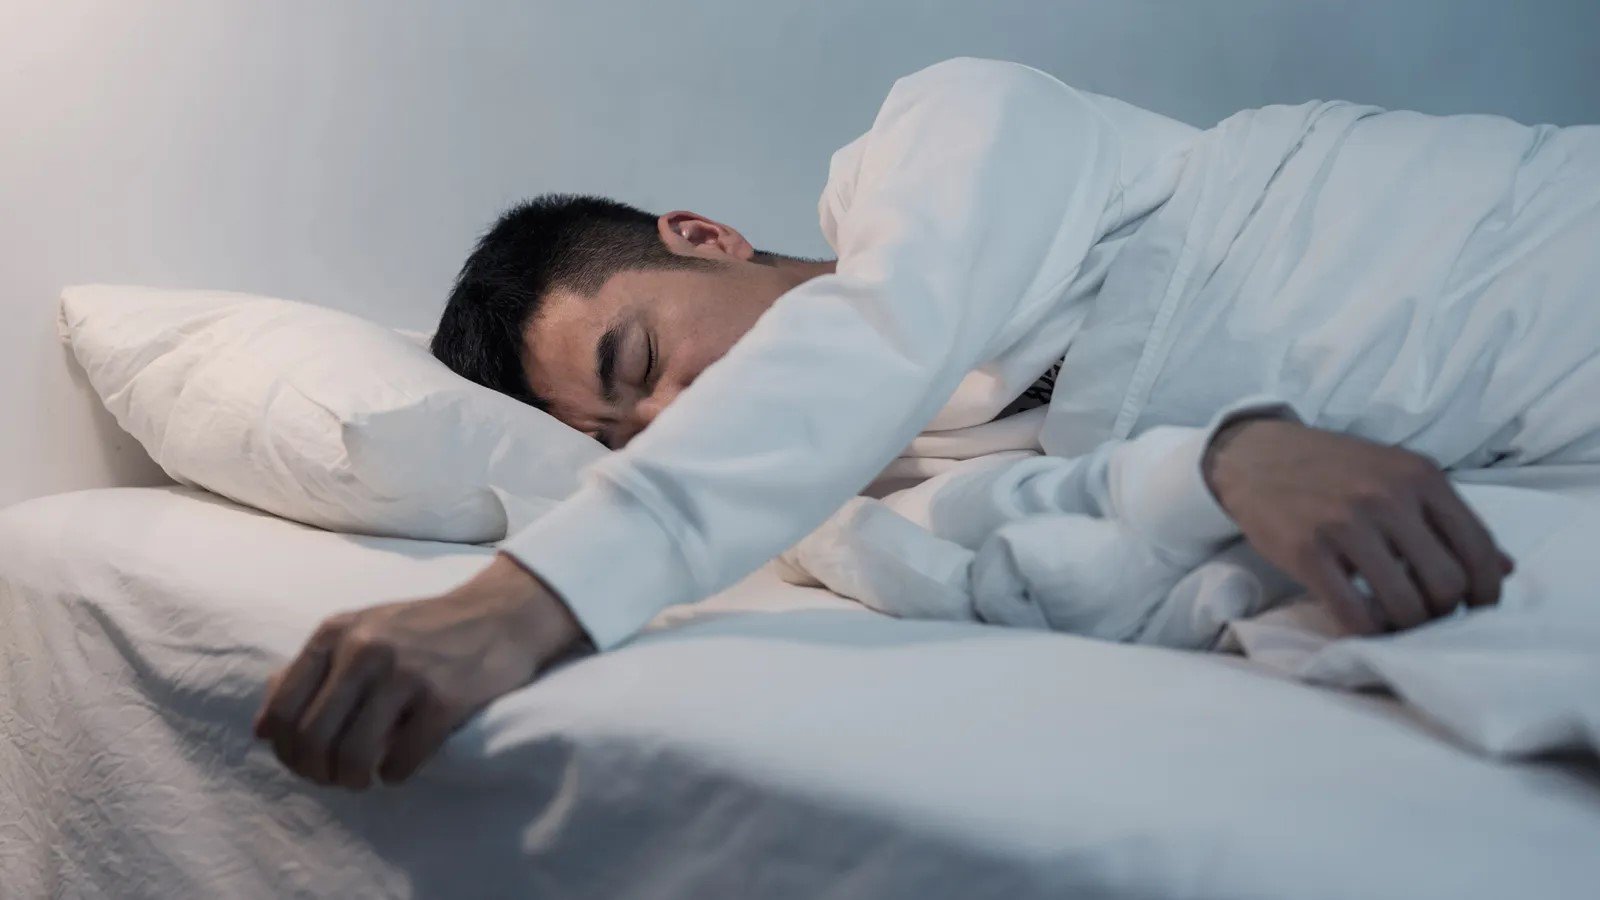 شلل النوم: الحالة الغامضة التي تثير فزع البعض وتجد تفسيرًا علميًا